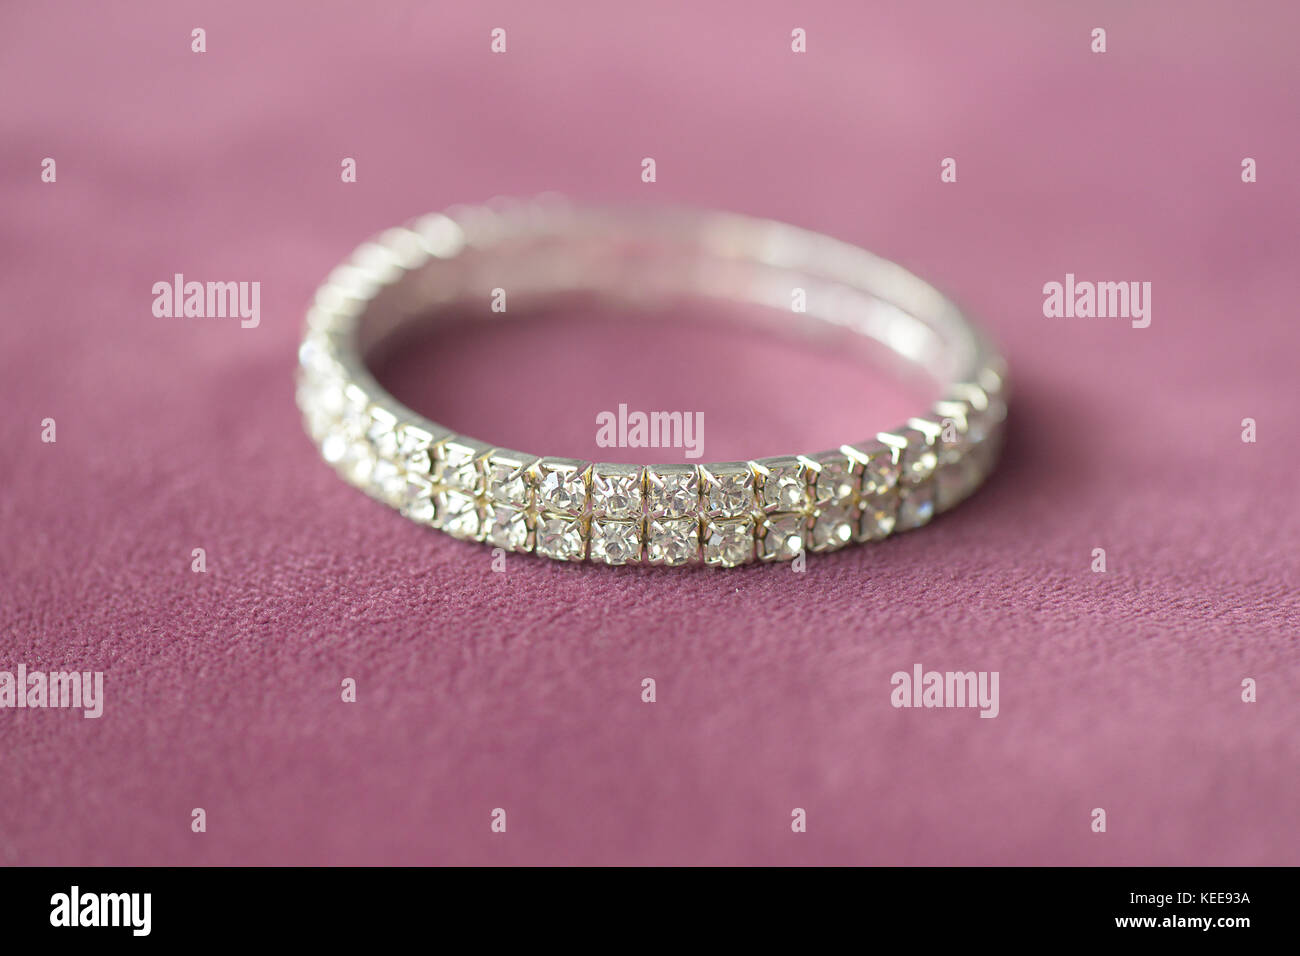 Faux diamants broche double rangée avec bracelet de montage réglage focus sélectif, positionné sur un tissu vieux rose Banque D'Images